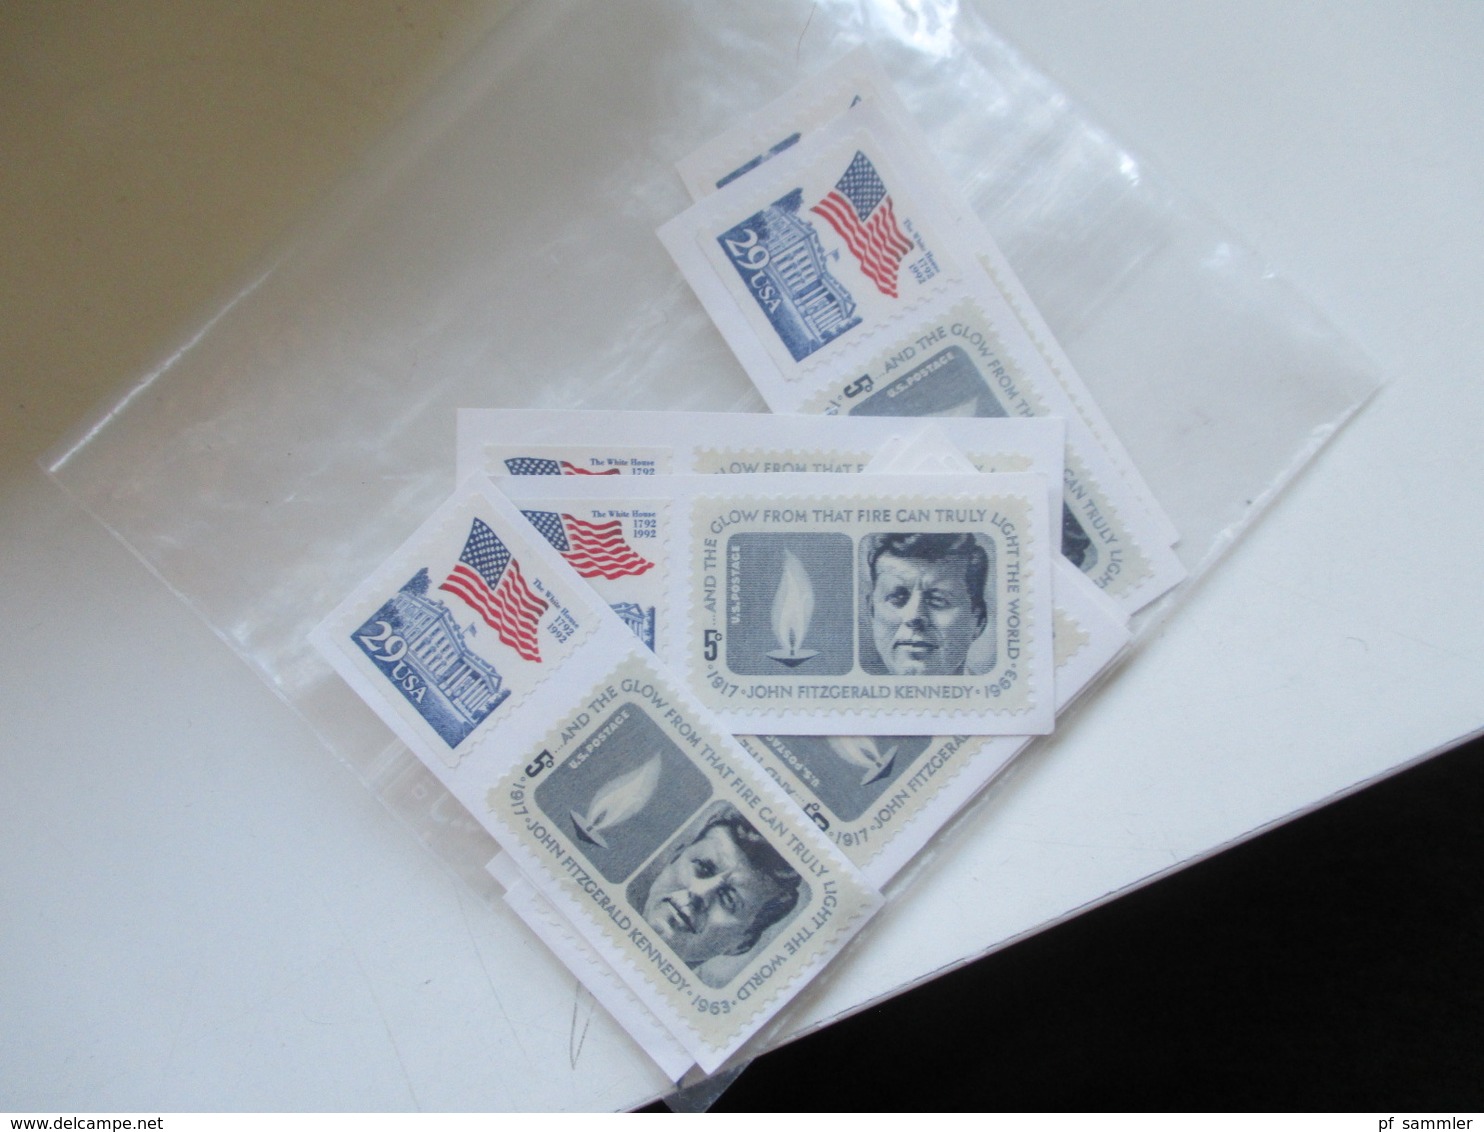 USA Stöberposten Hunderte Papierfreie Marken In Tüten! Stöberposten!! Ab Den 1950er Jahren! - Lots & Kiloware (mixtures) - Min. 1000 Stamps